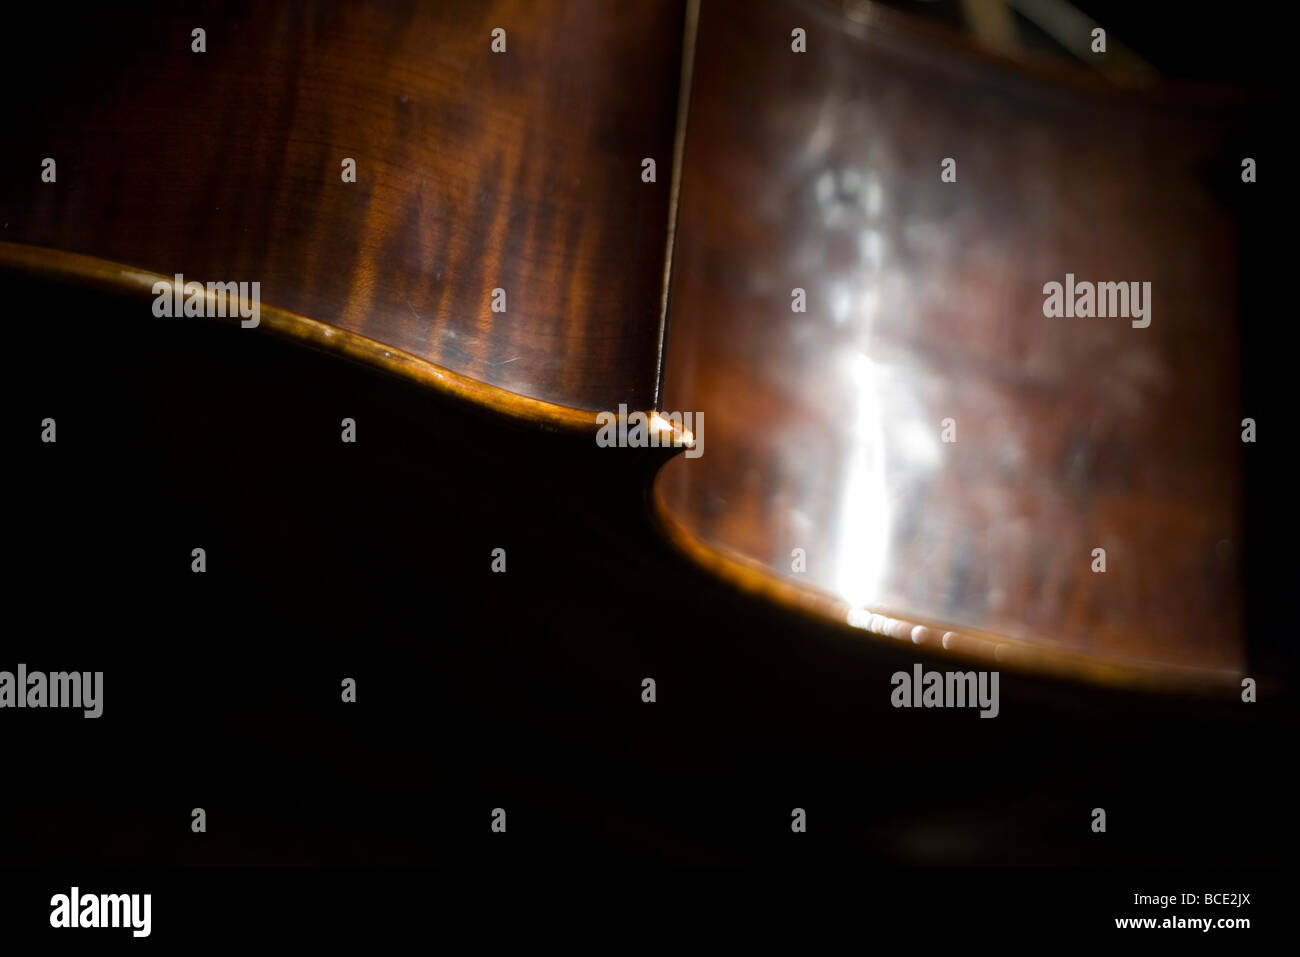 Abstrakte Details ein Kontrabass bei einem Konzert Pecs, Ungarn. Pécs ist 2010 Kulturhauptstadt Europas gewählt worden Stockfoto